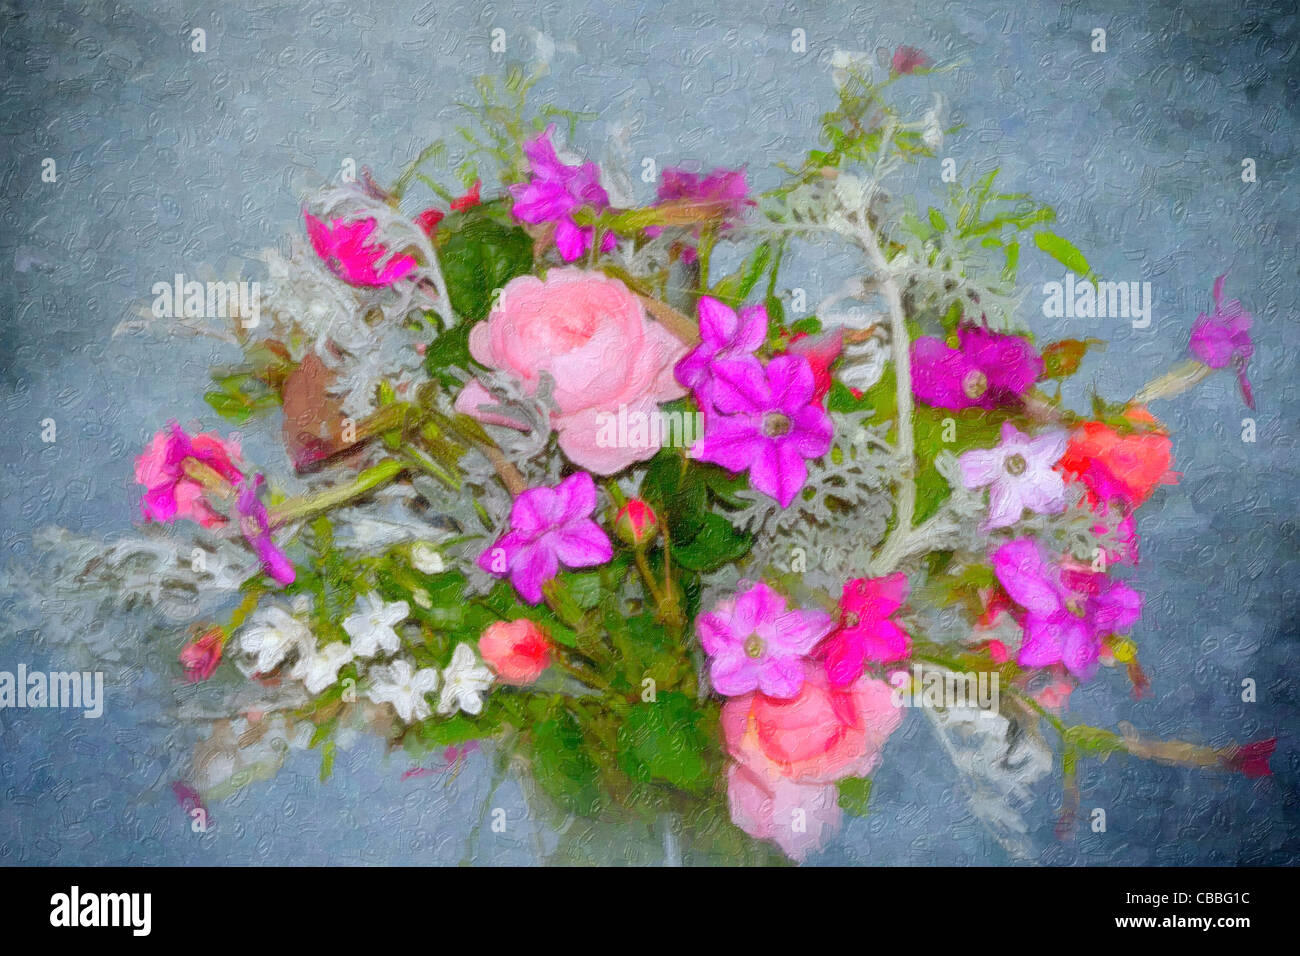 Un vase de fleurs fraîches cueillies du jardin Banque D'Images